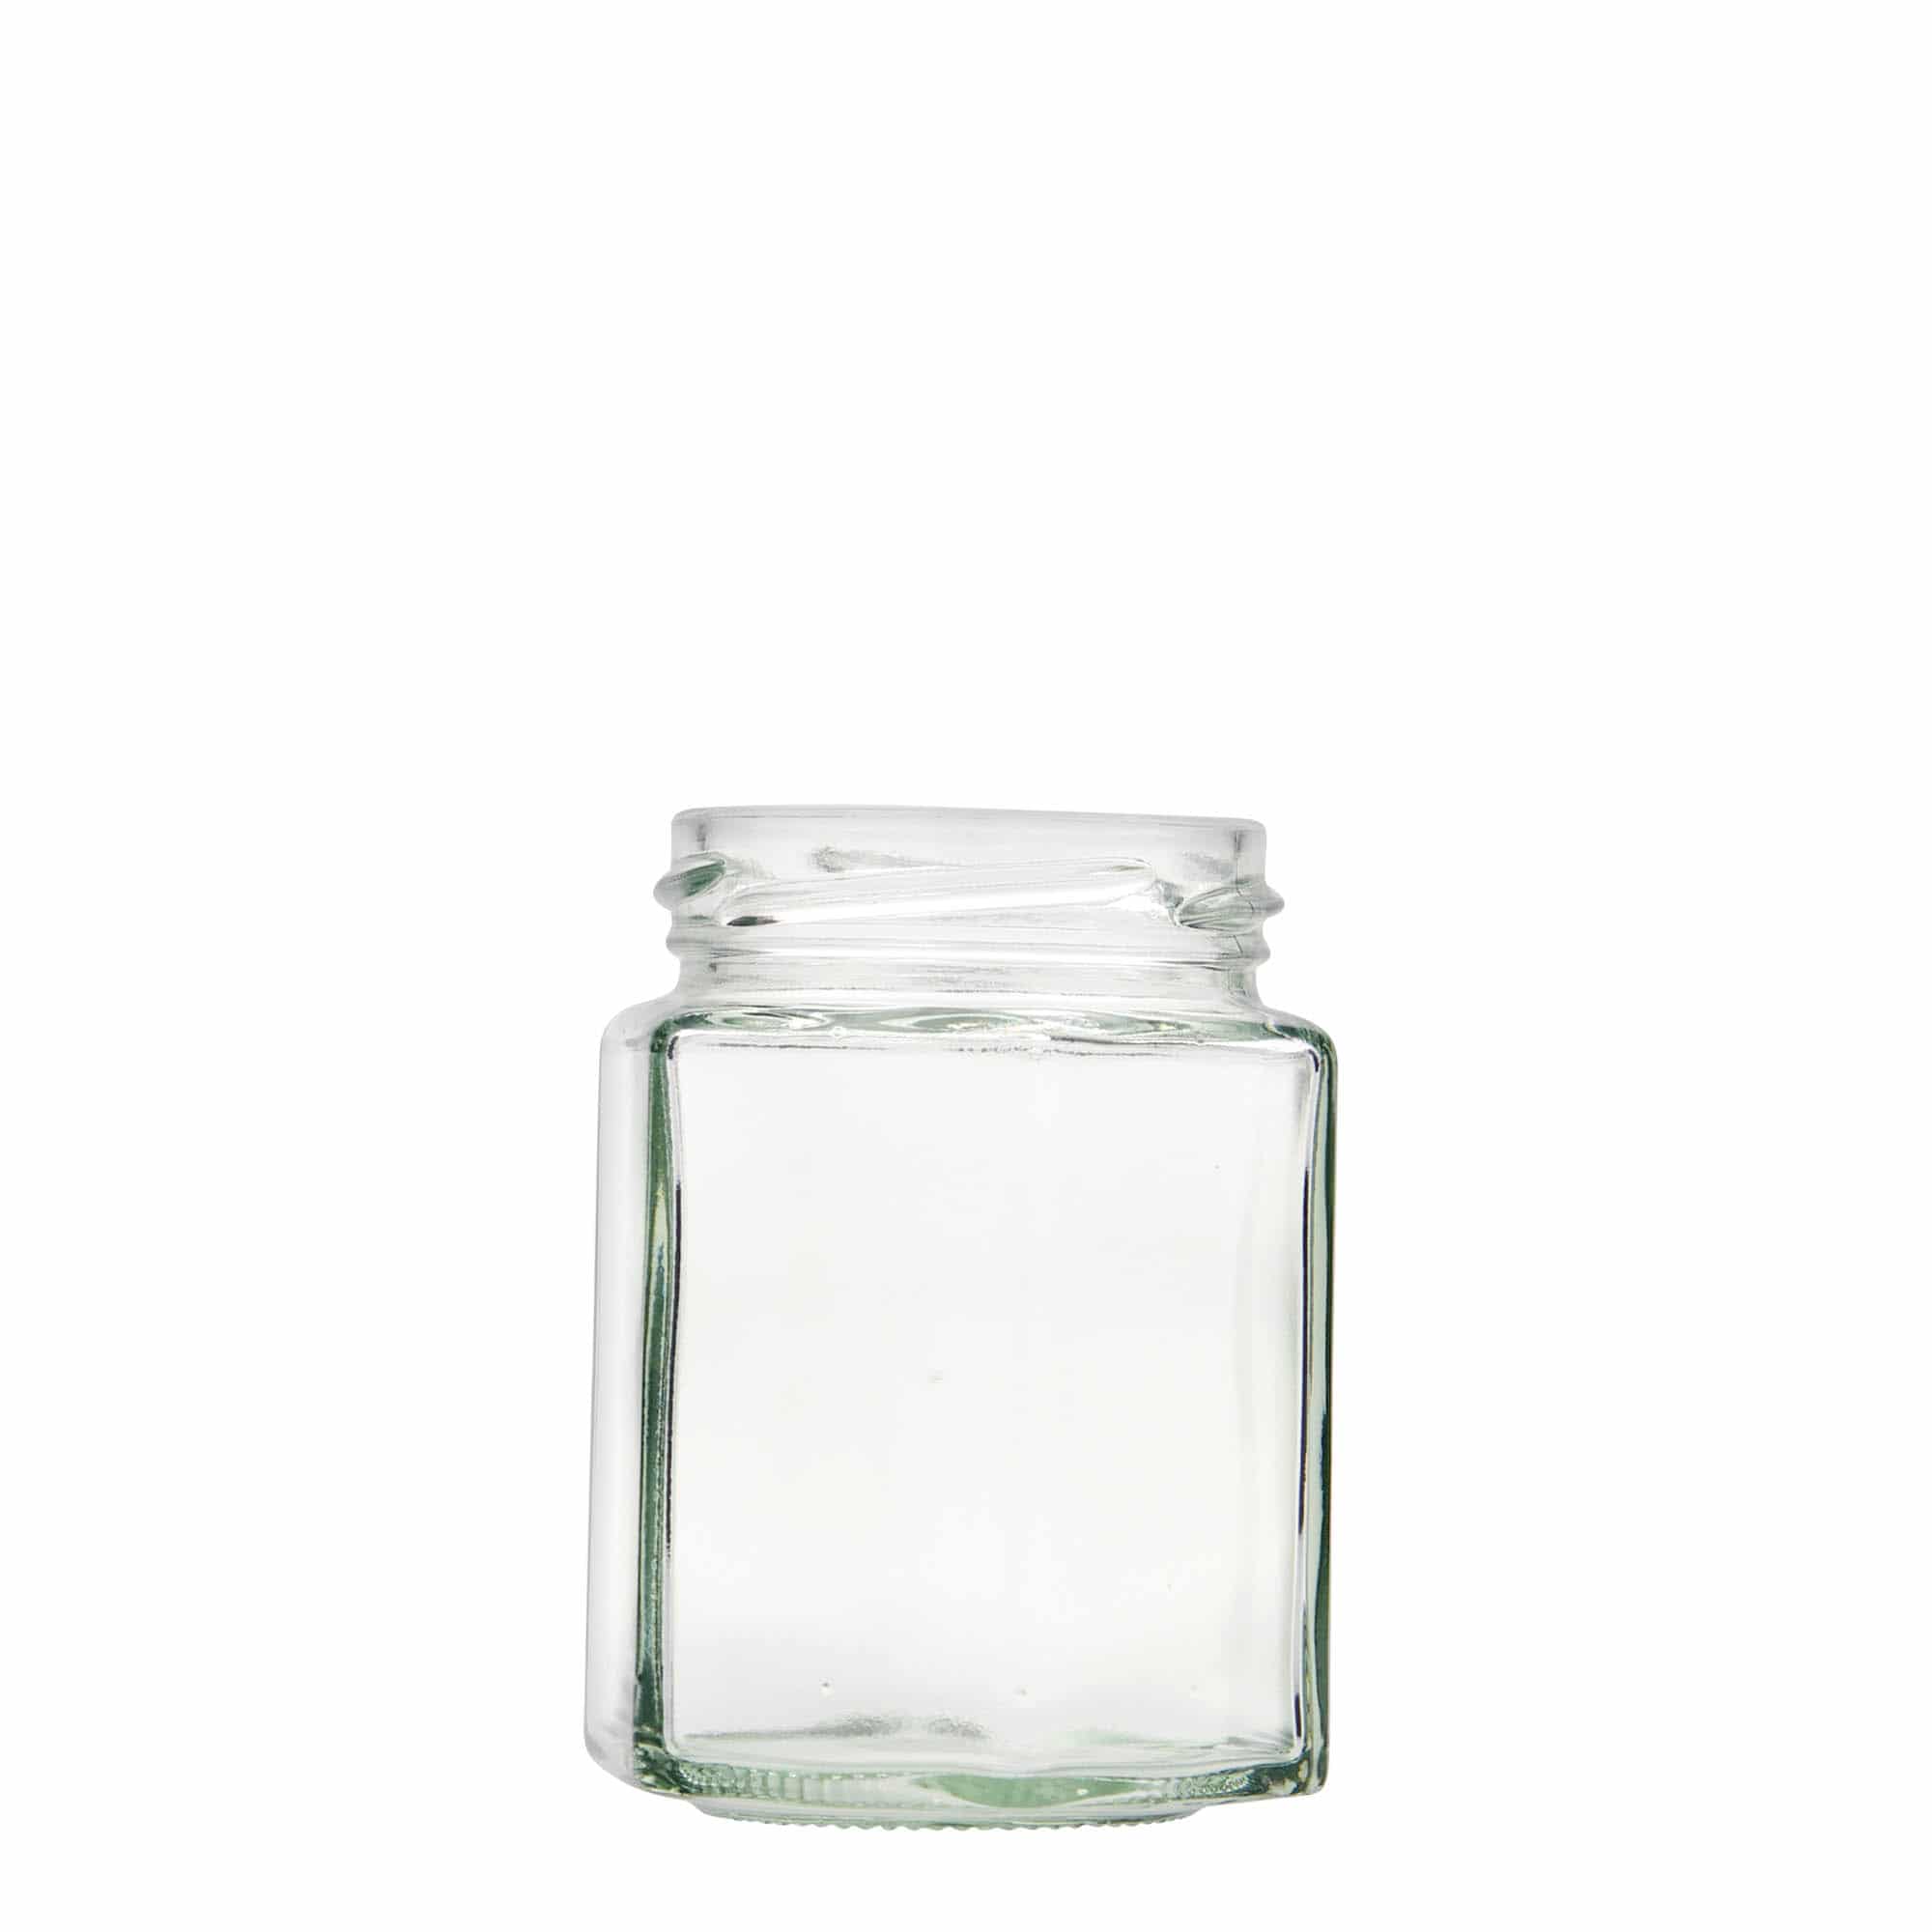 Šestiúhelníková sklenice 191 ml, uzávěr: Twist Off (TO 58)